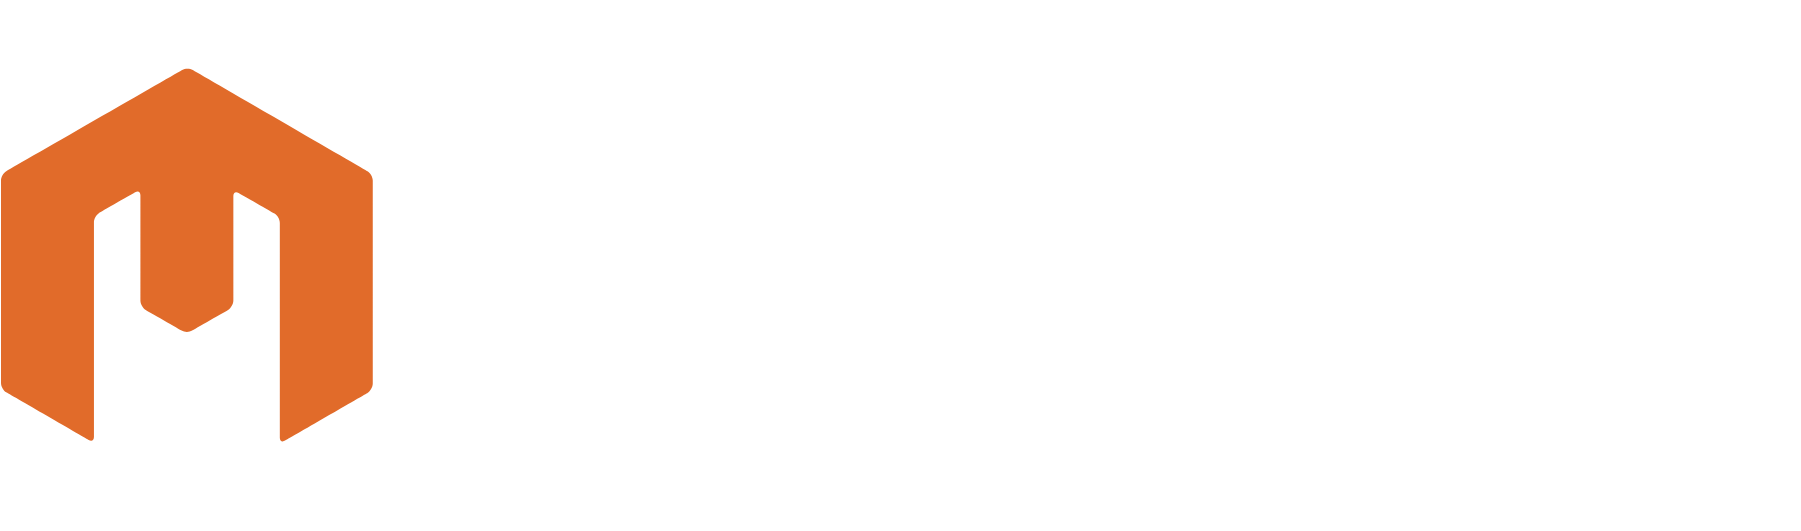 Mirion Technologies logo grand pour les fonds sombres (PNG transparent)